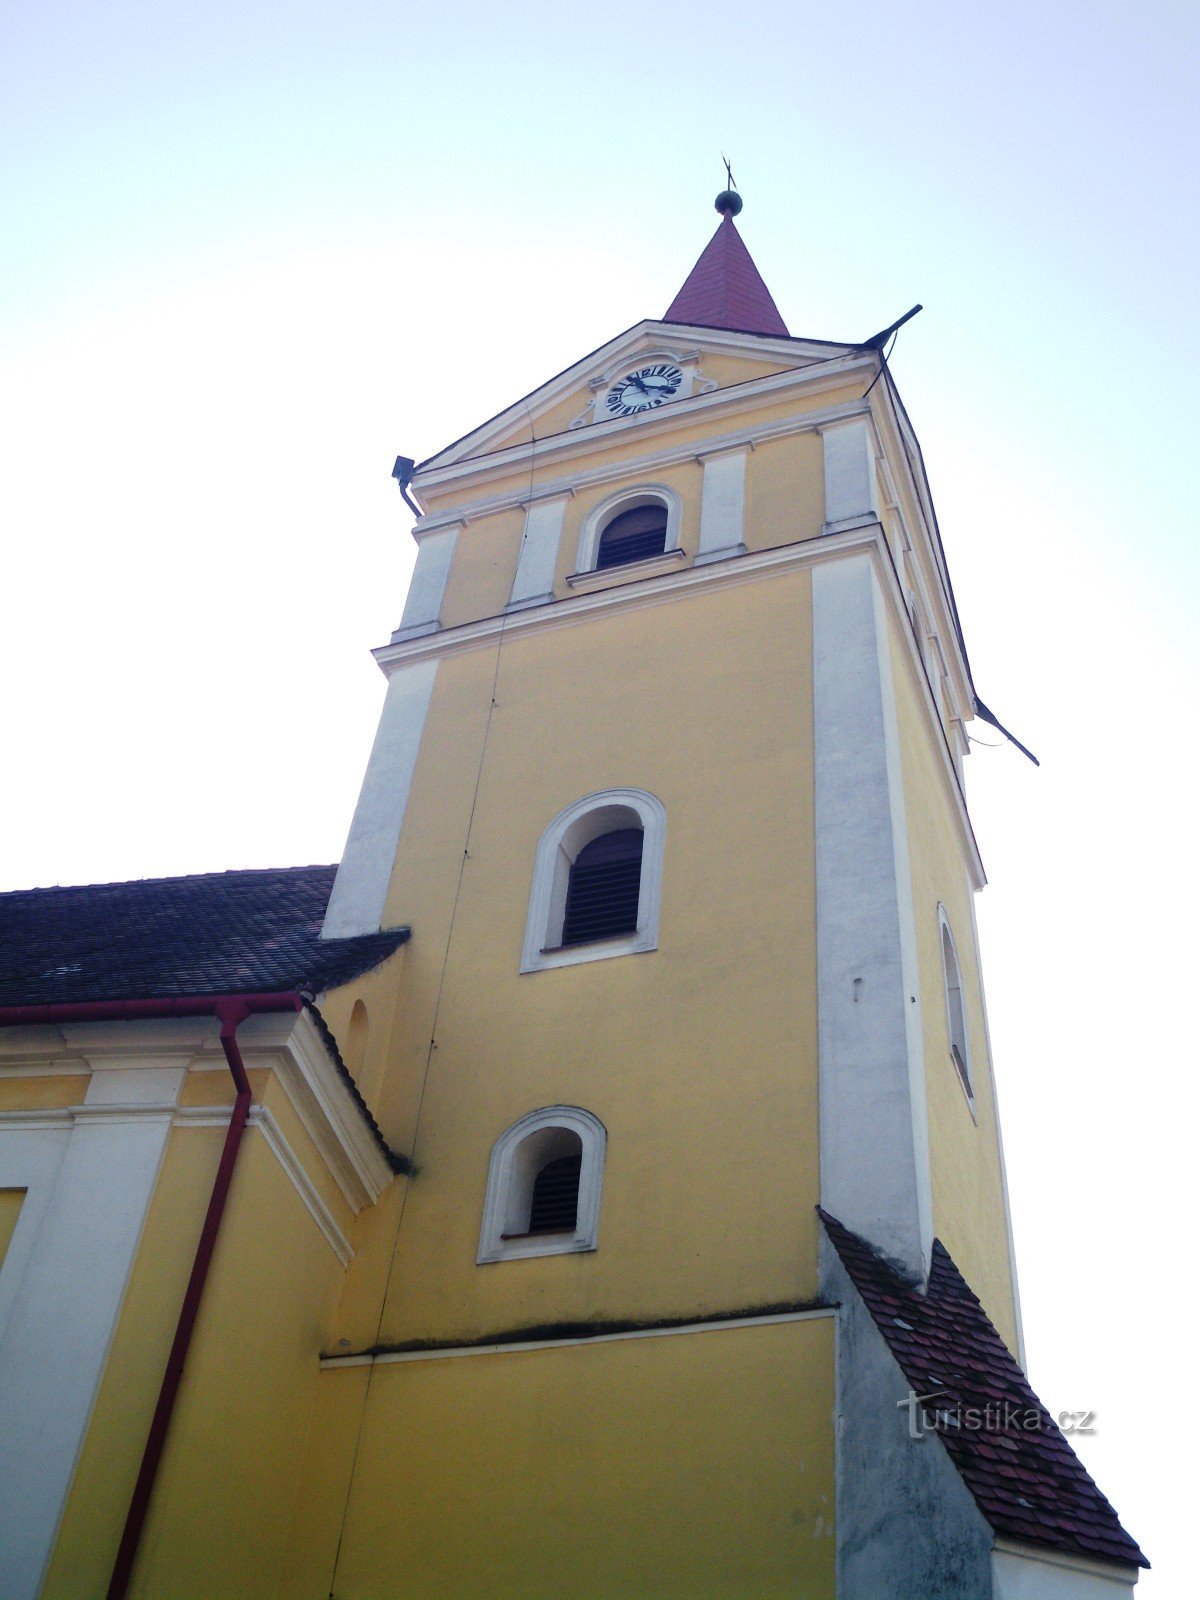 Koryčany - Pyhän Nikolauksen kirkko. Lawrence